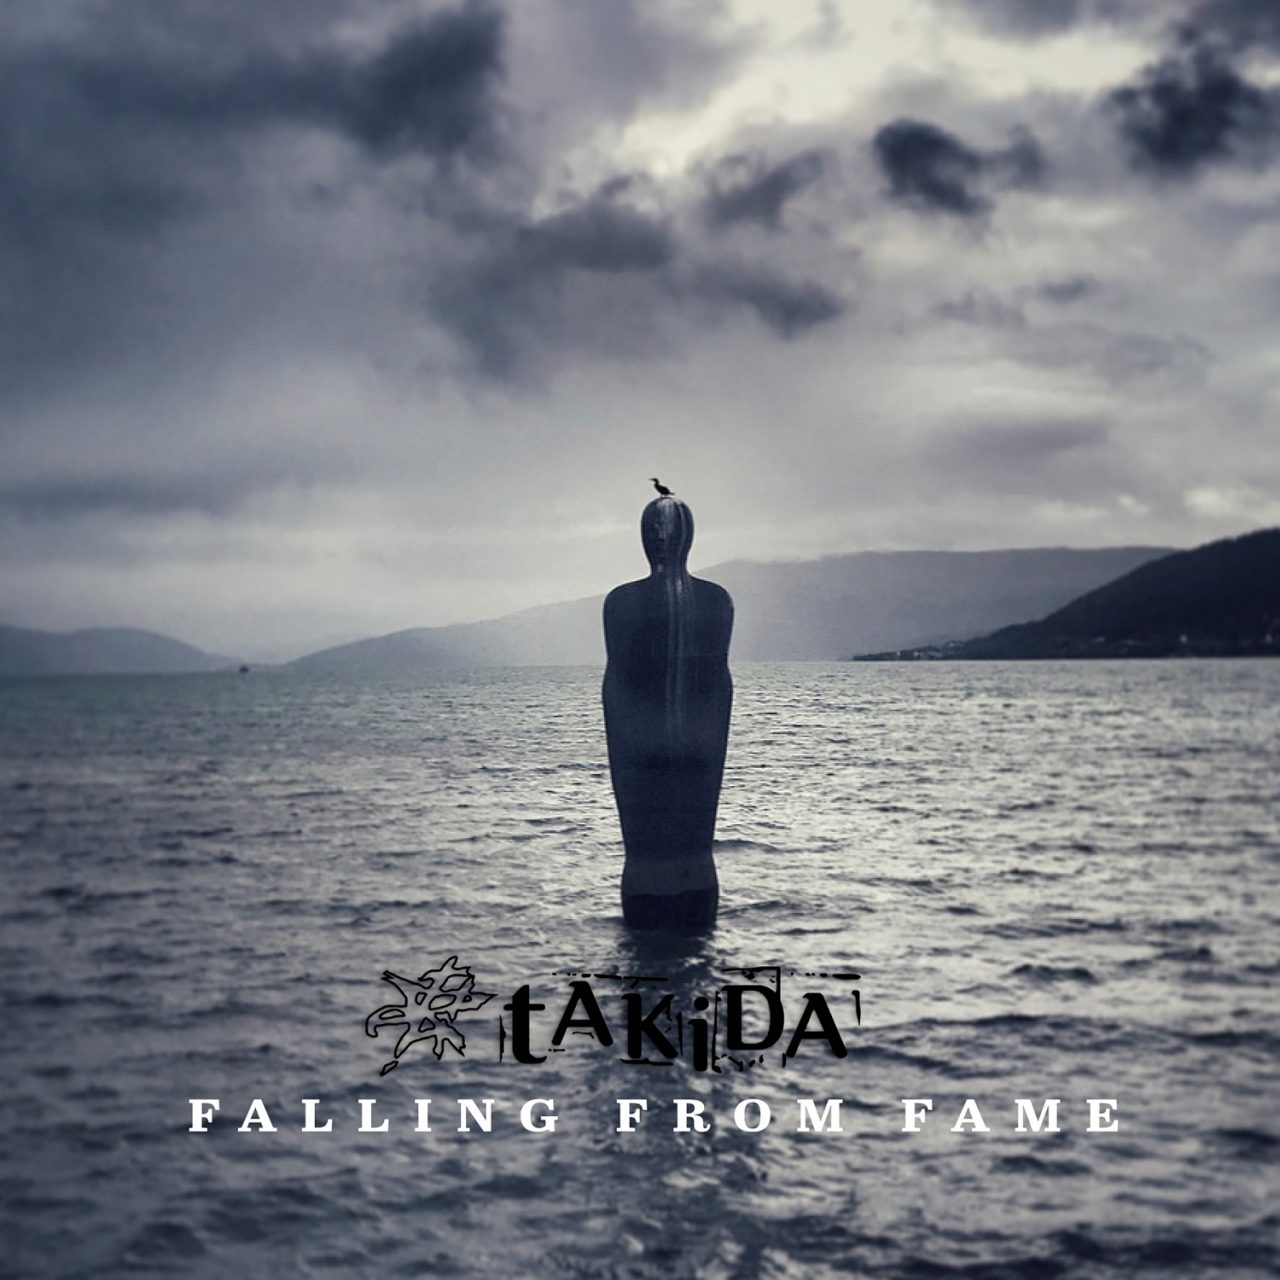 Das Albumcover "Falling From Fame" von tAKiDA zeigt eine Statue im Meer. Auf dem Kopf der Statue sitzt ein Vogel. Im Hintergrund sieht man Berge und graue Wolken am Himmel.